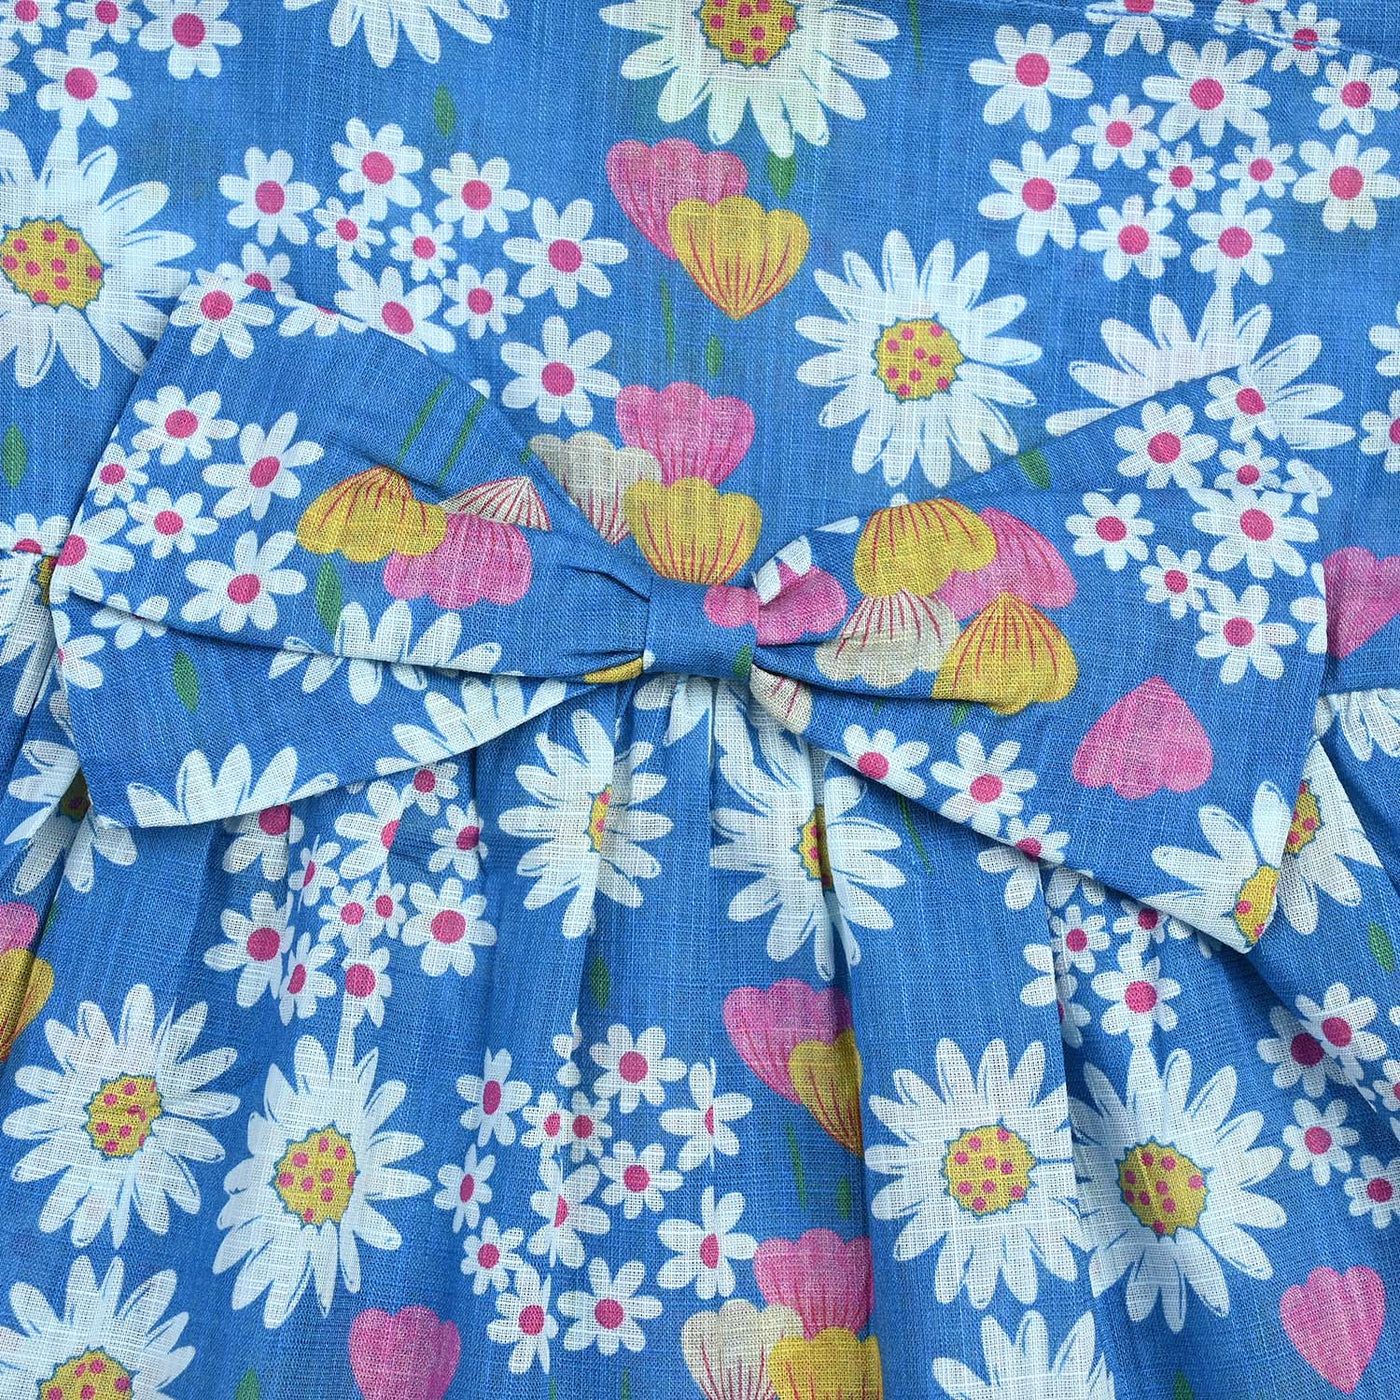 Infant Girls Cotton Floral Flower 2 PC Suit -Blue